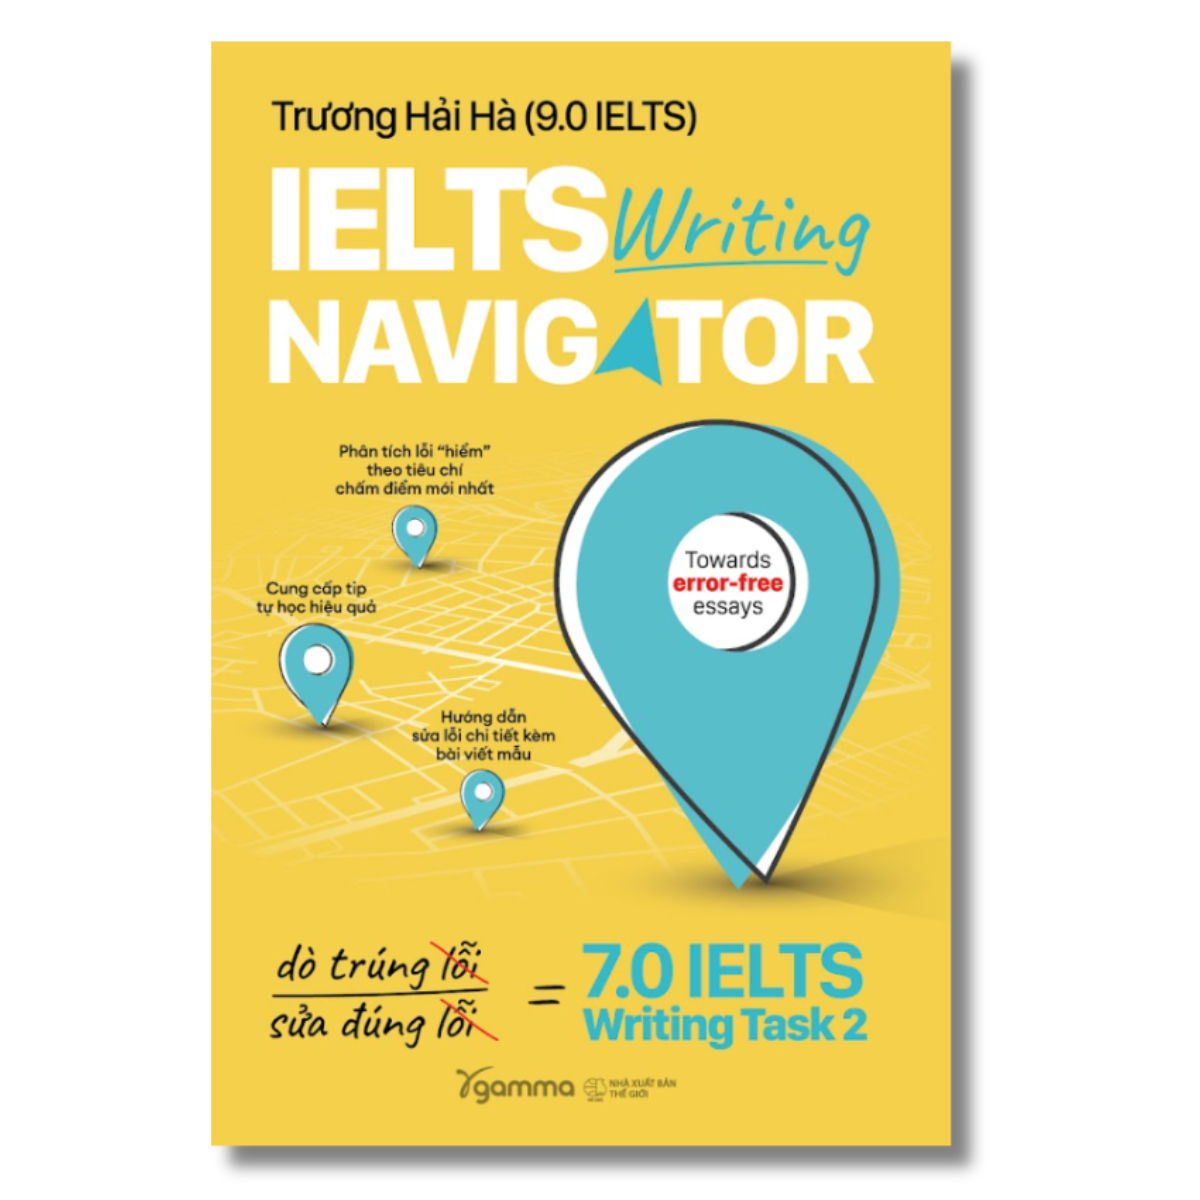 IELTS Writing Navigator - Dò Trúng Lỗi, Sửa Đúng Lỗi - 7.0 IELTS Writing Task 2 (Trương Hải Hà)